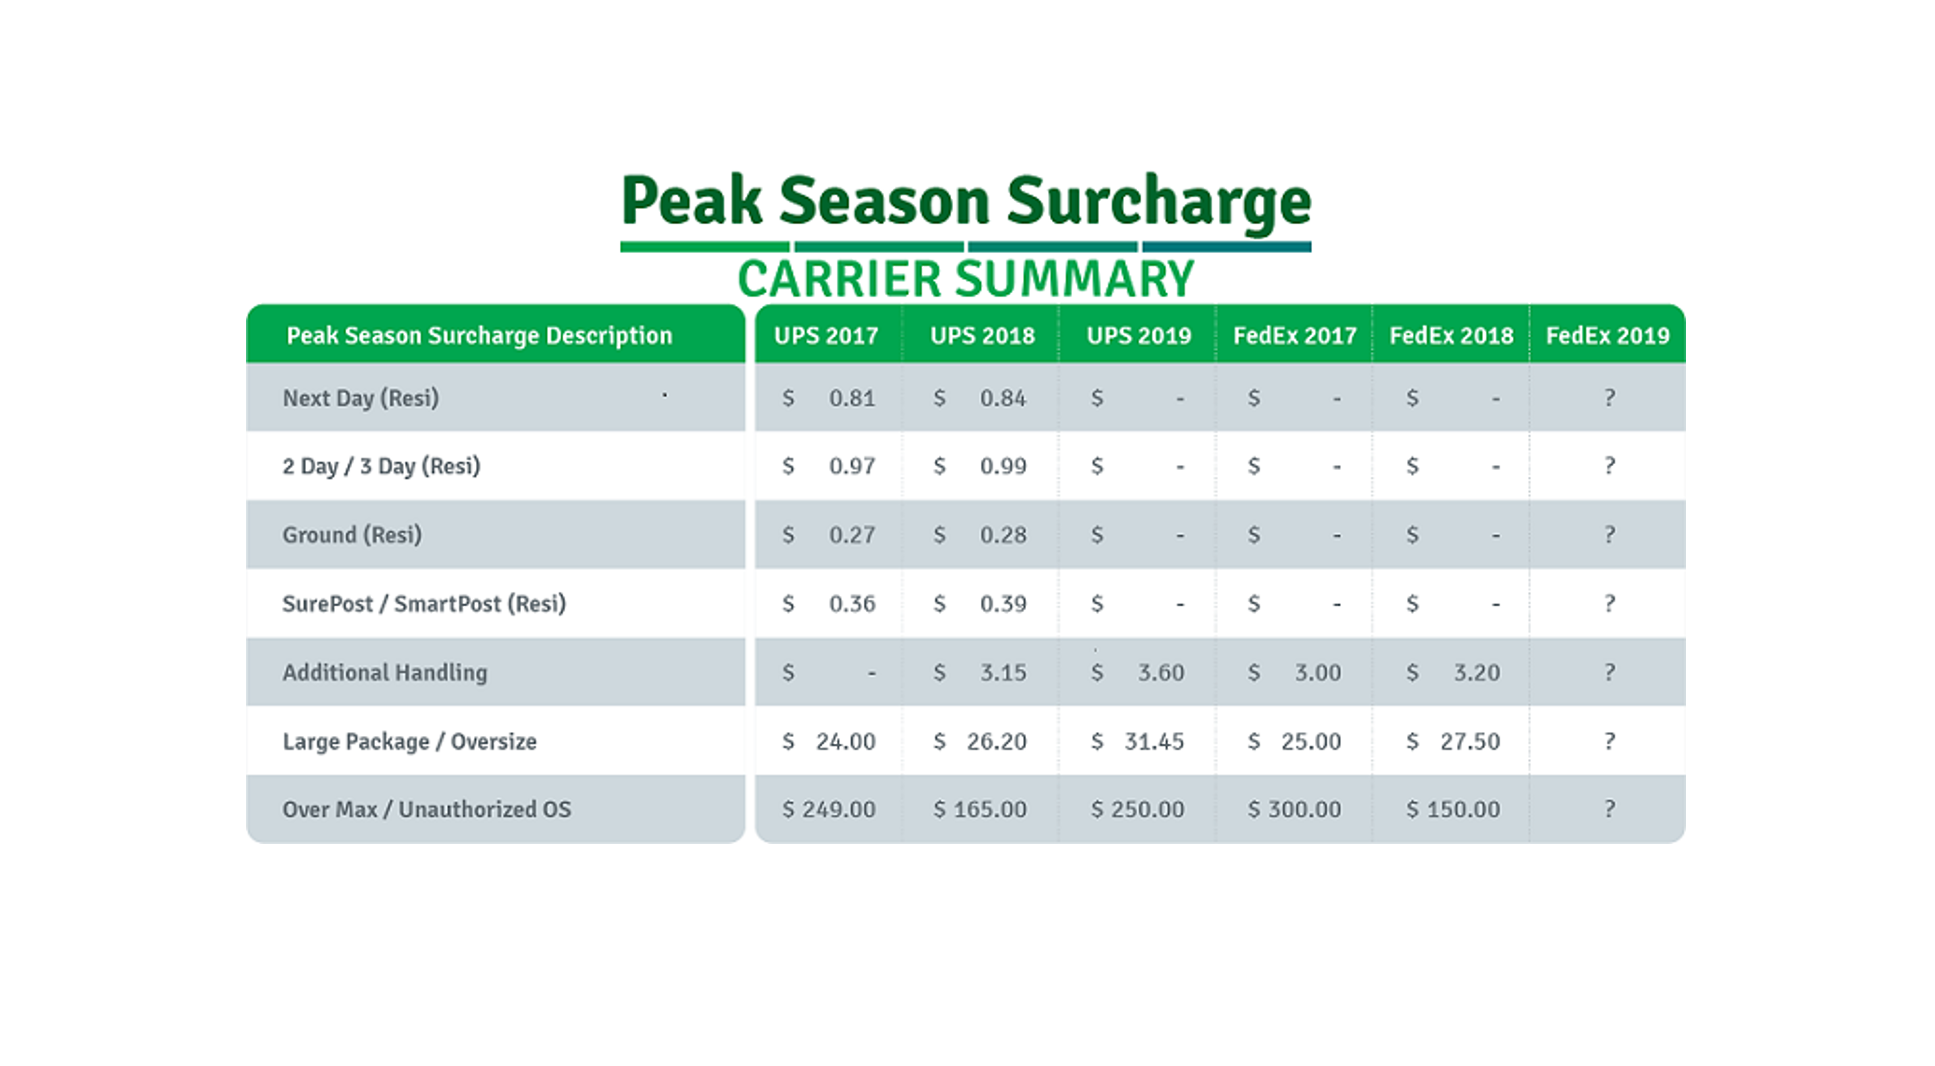 Important: UPS Announces 2019 Peak Season Surcharges